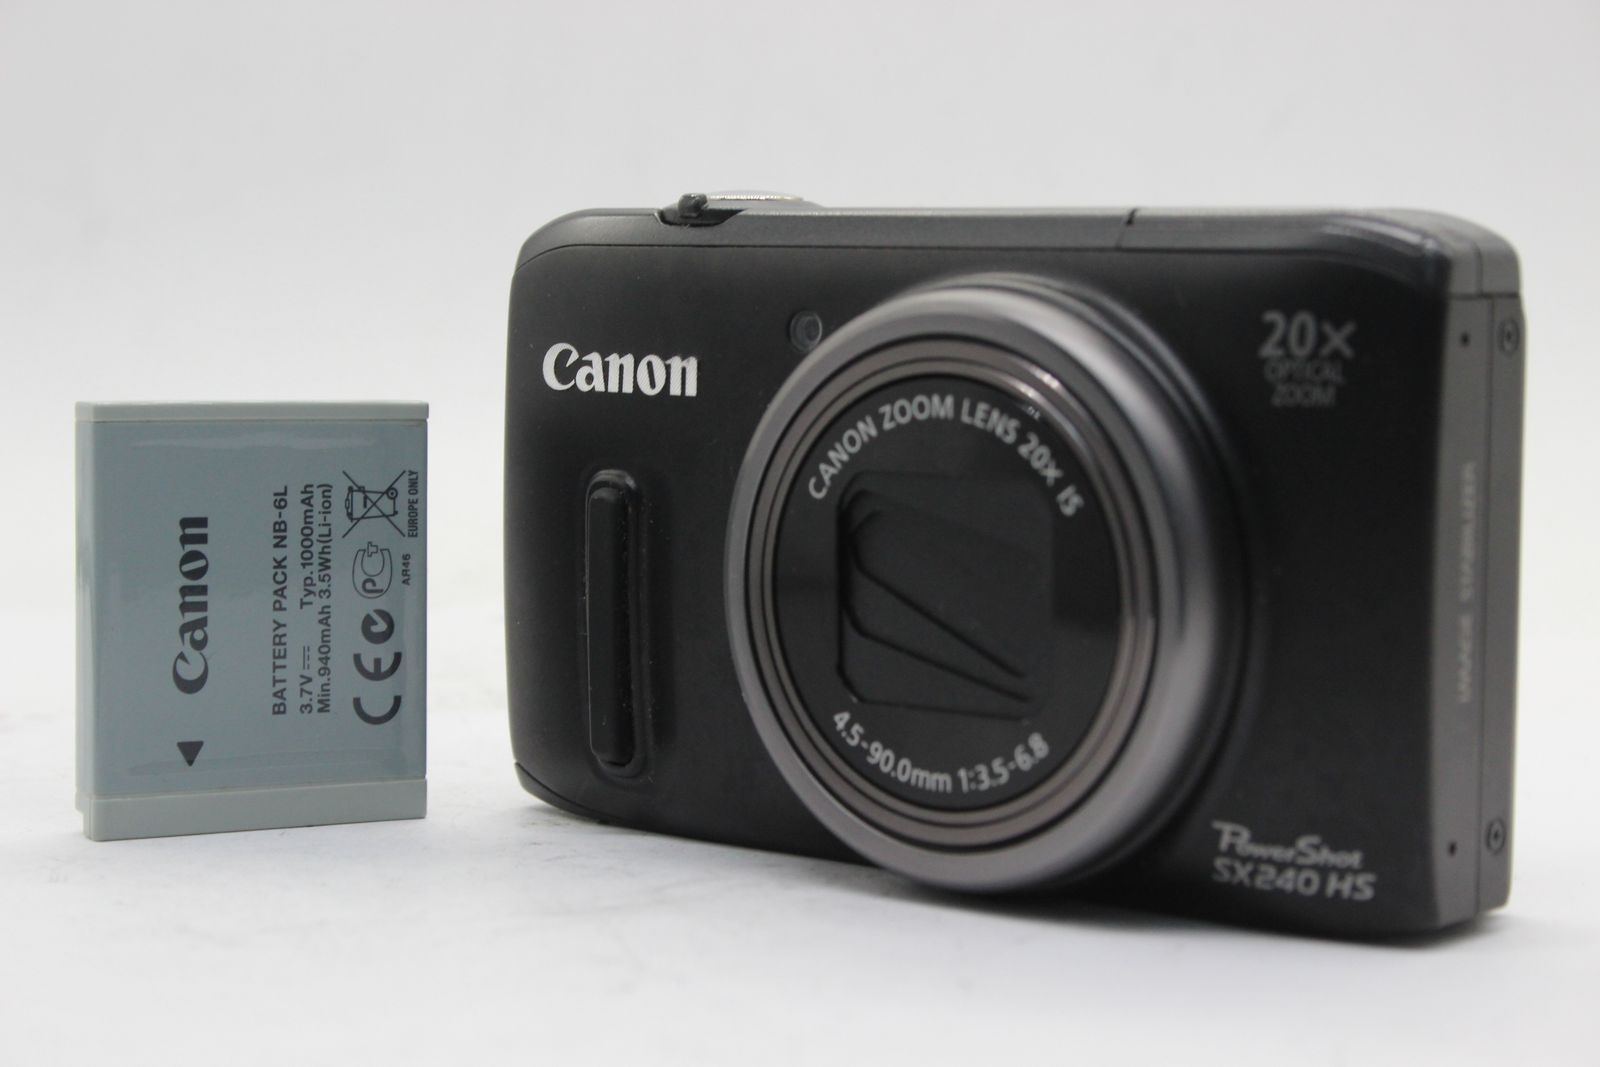 【返品保証】 キャノン Canon PowerShot SX240 HS ブラック 20x バッテリー付き コンパクトデジタルカメラ  s4847